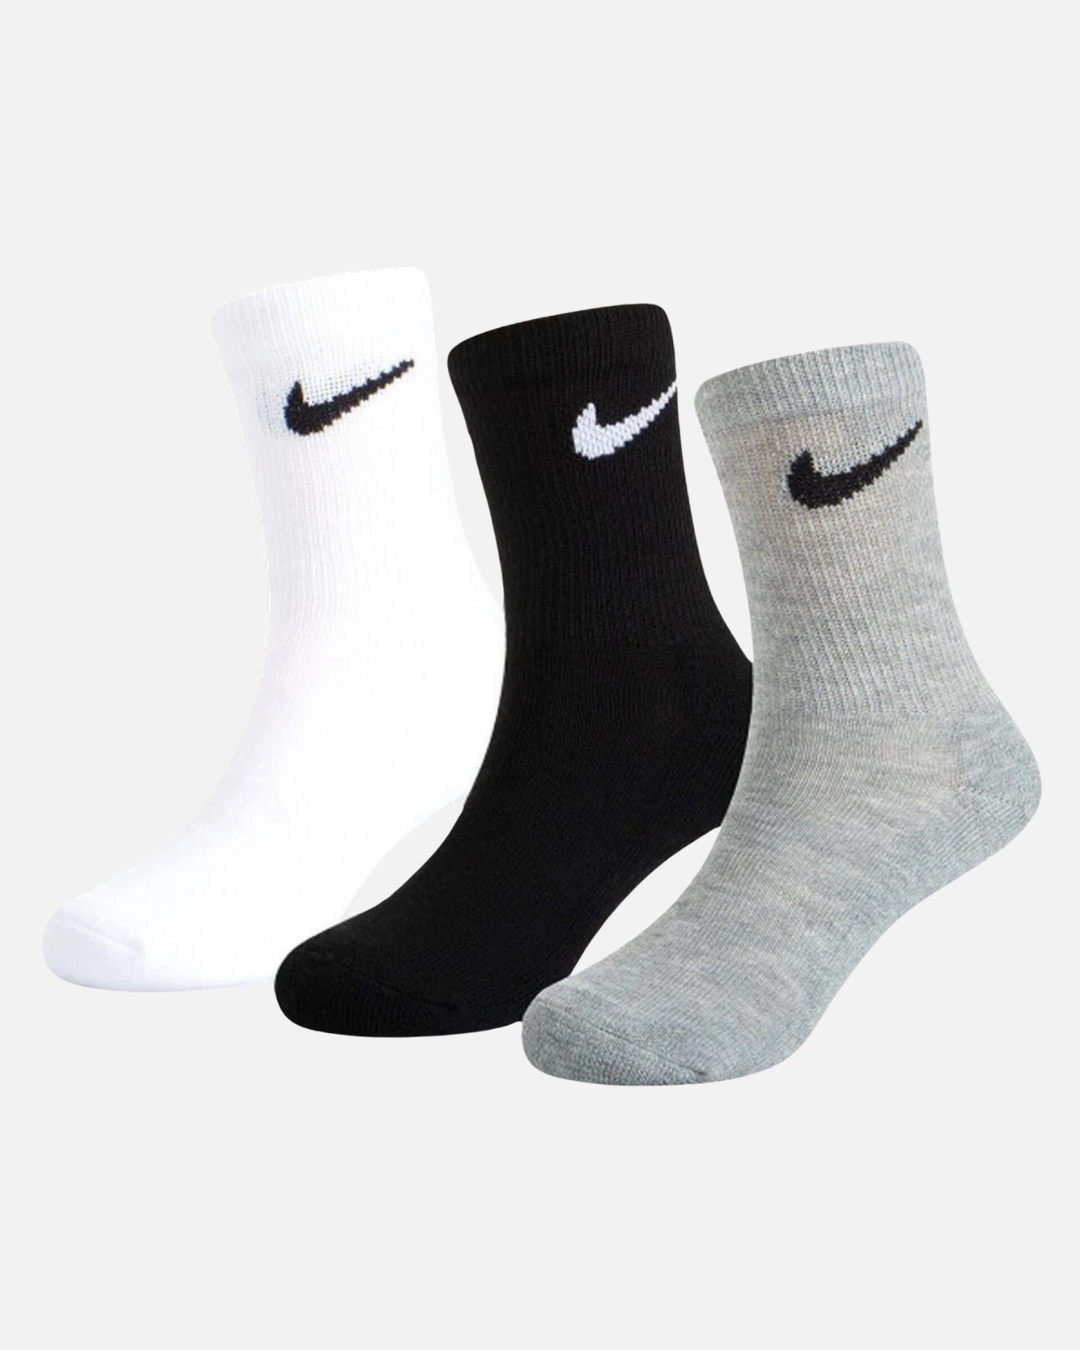 Confezione da 3 paia di calzini Nike - Nero/Grigio/Bianco